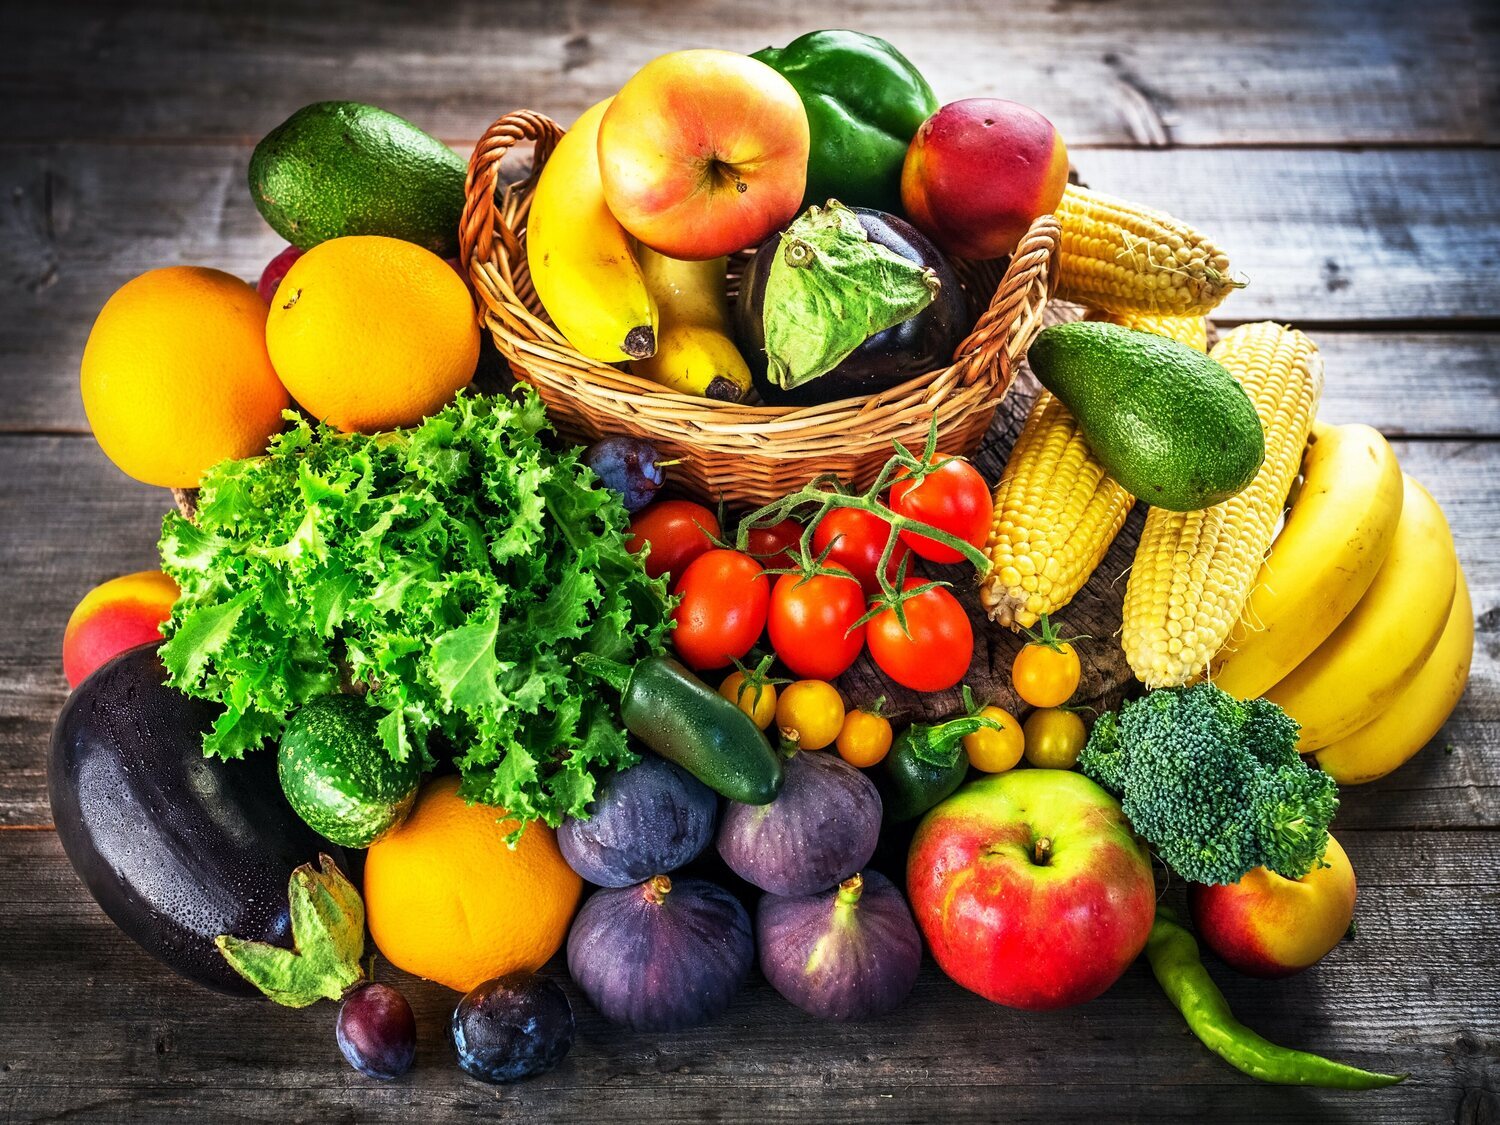 Estas son las veces que hay que consumir fruta al día para alargar la esperanza de vida, según un estudio